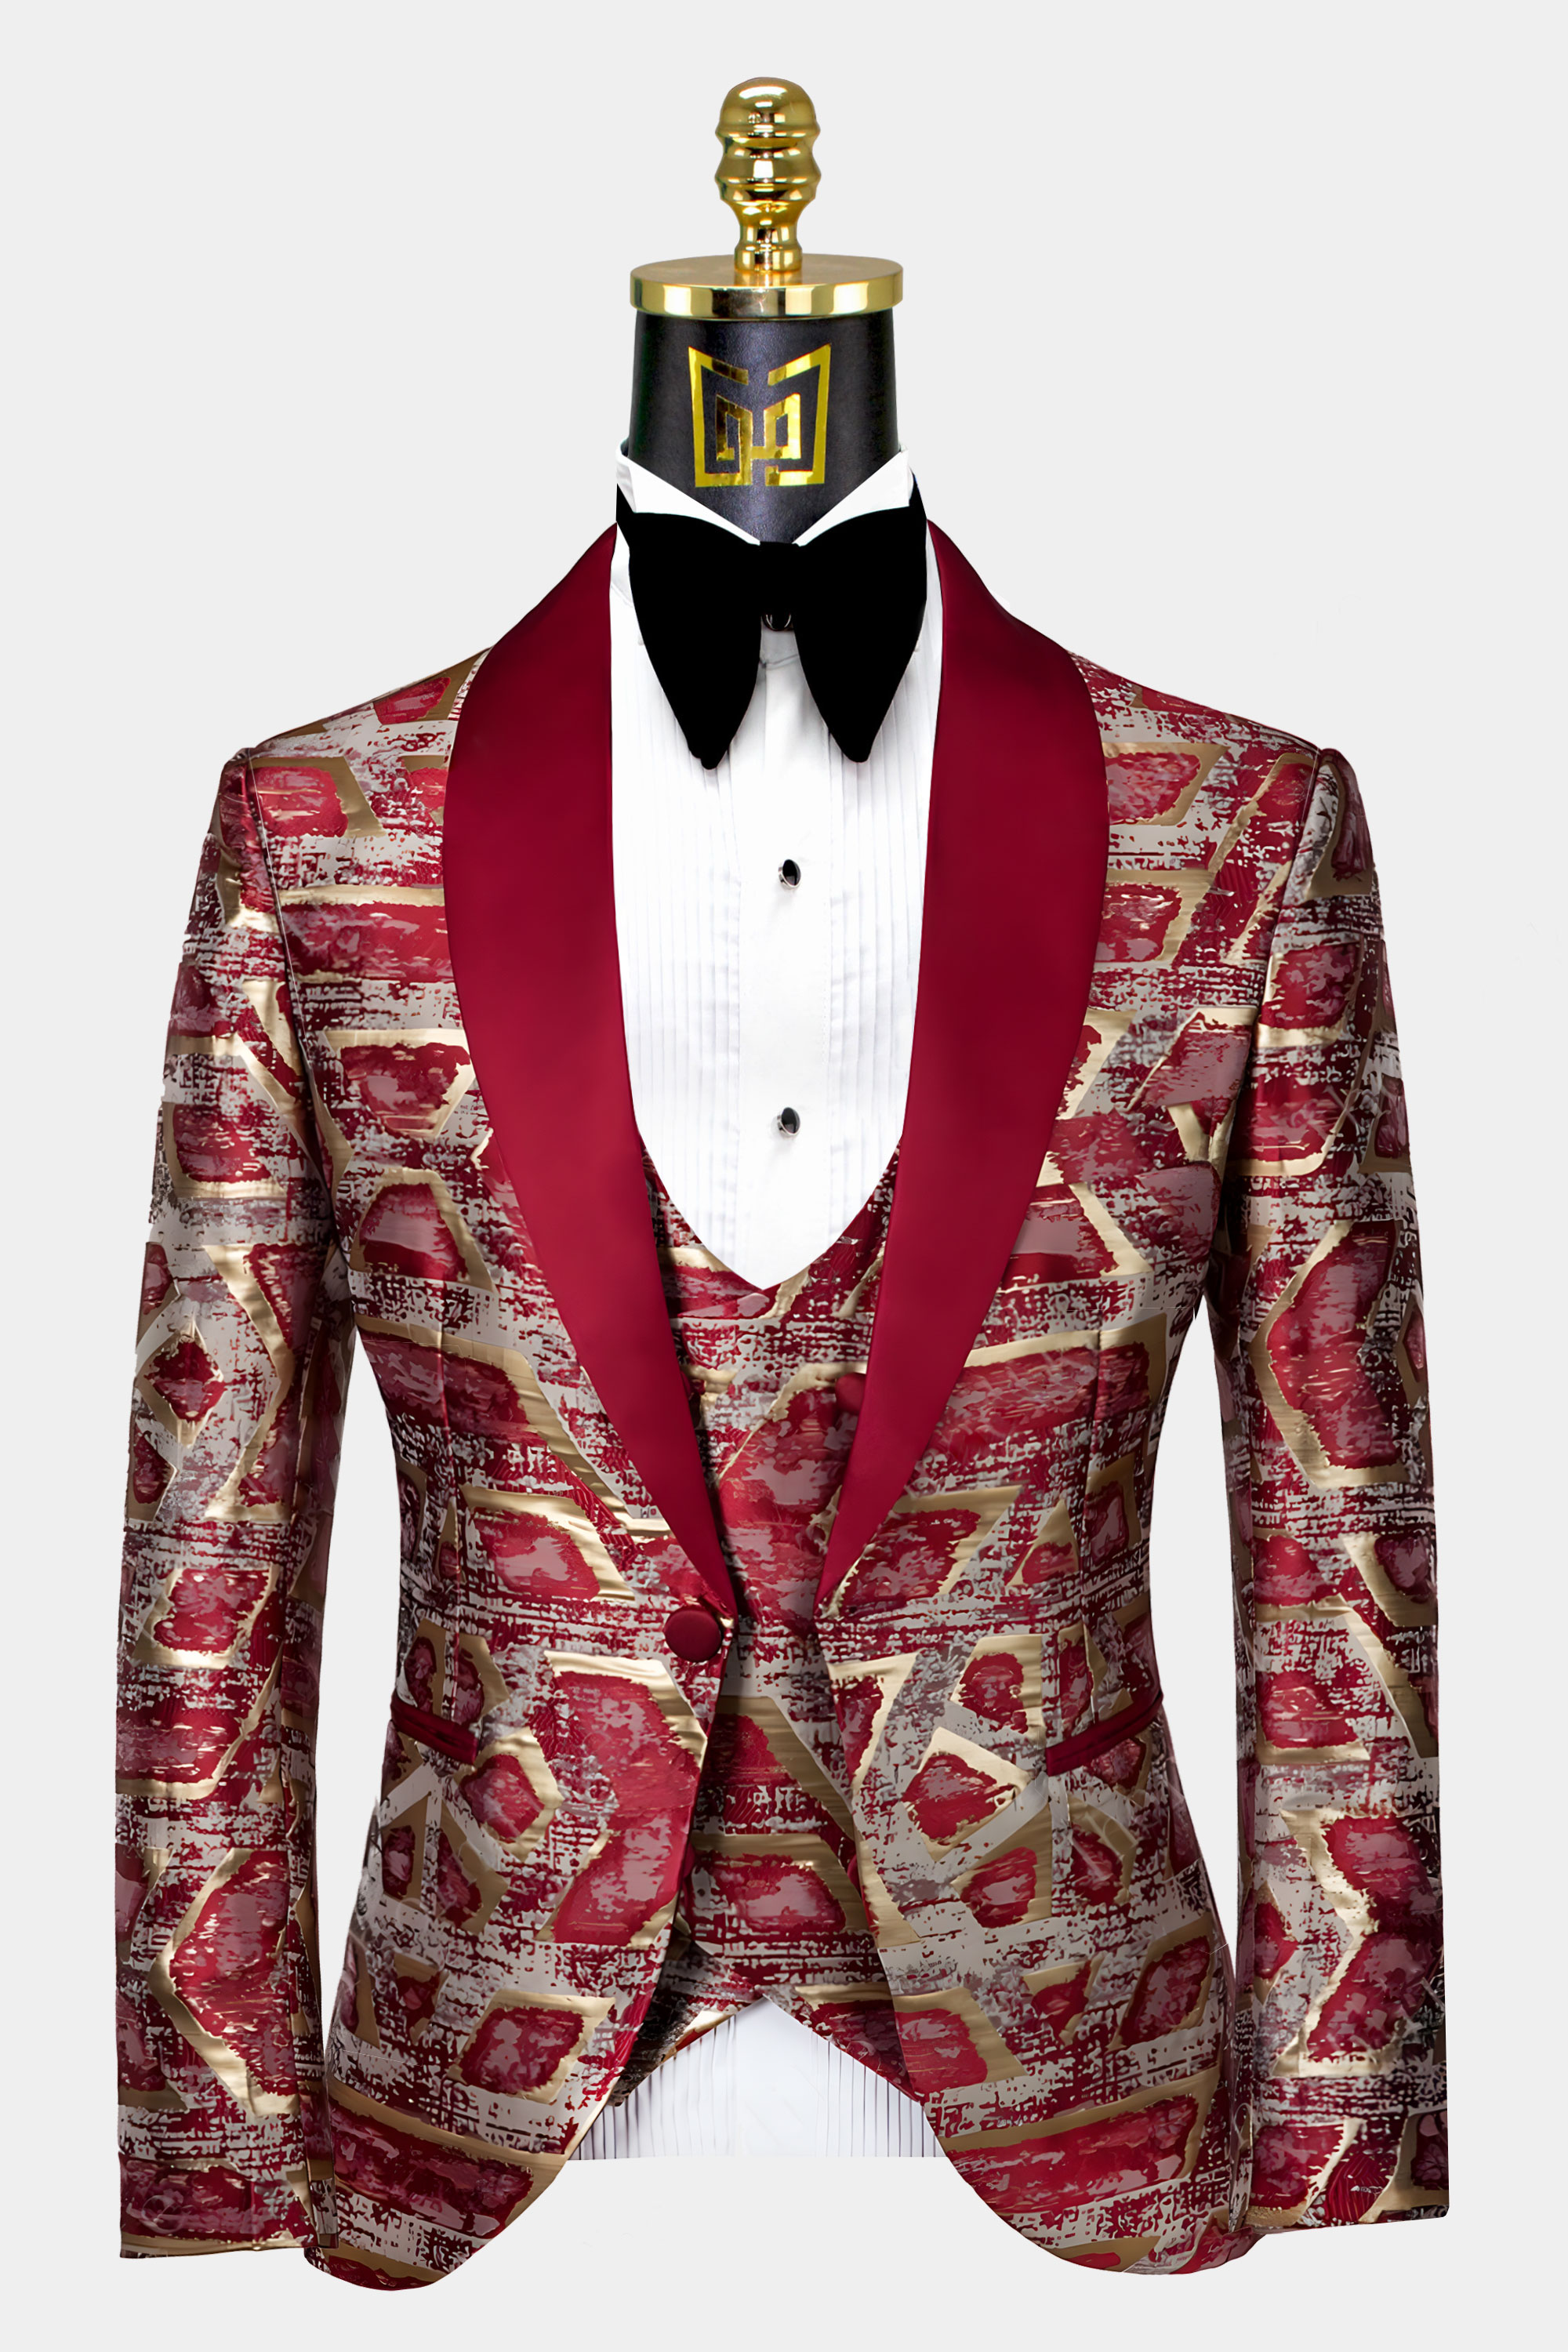 Burgundy and Gold Tuxedo Suit | Gentleman's Guru